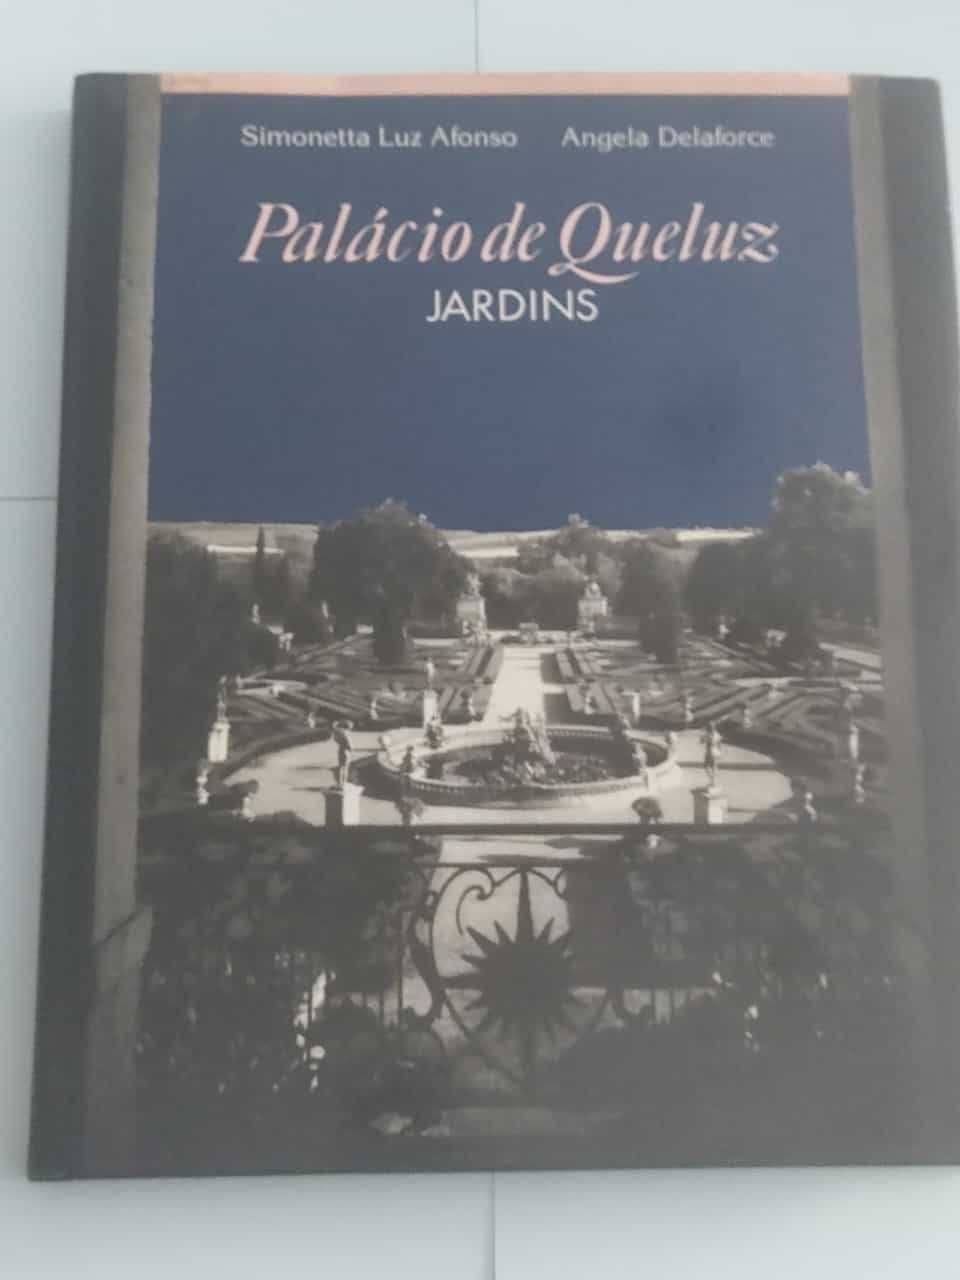 Palácio de Queluz Jardins